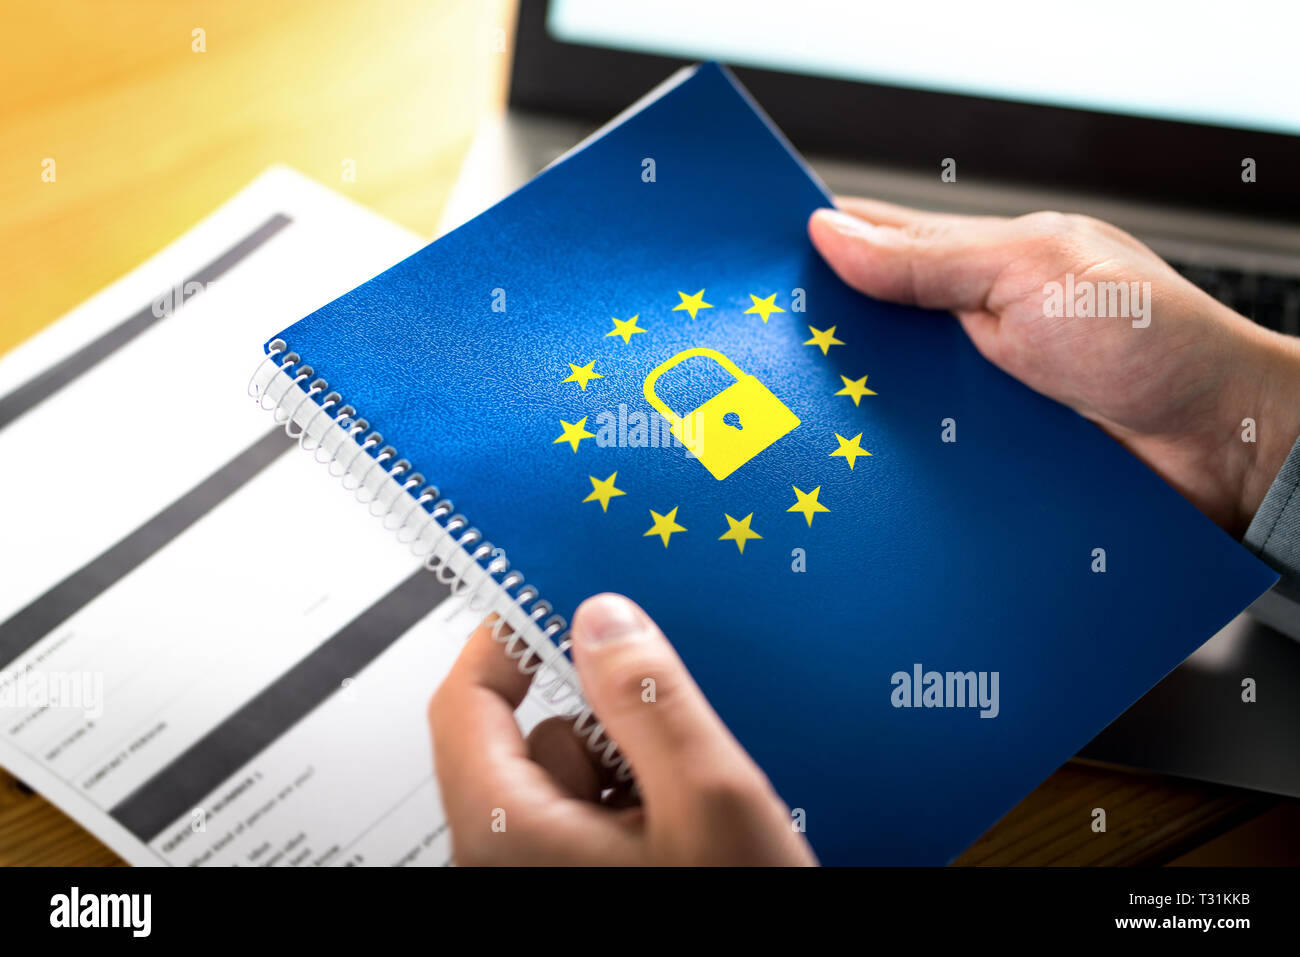 Concept du GDPR (Règlement général sur la protection des données). Homme d'affaires portant un carnet avec logo drapeau de l'Union européenne (UE) et icône de verrouillage. Banque D'Images